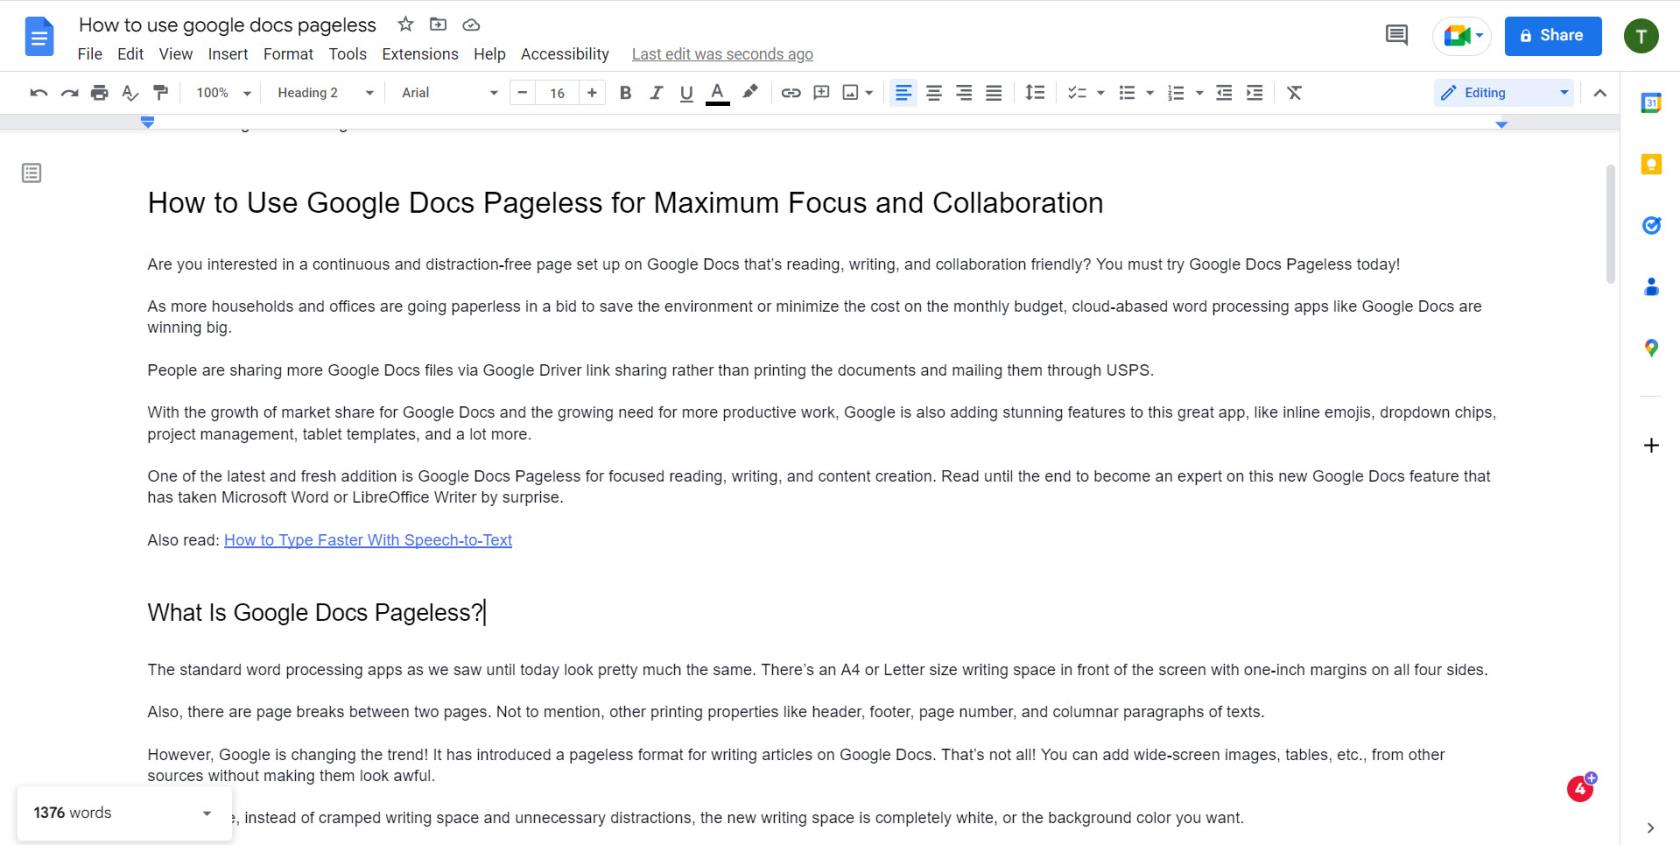 Cómo usar Google Docs sin página para lograr el máximo enfoque y colaboración